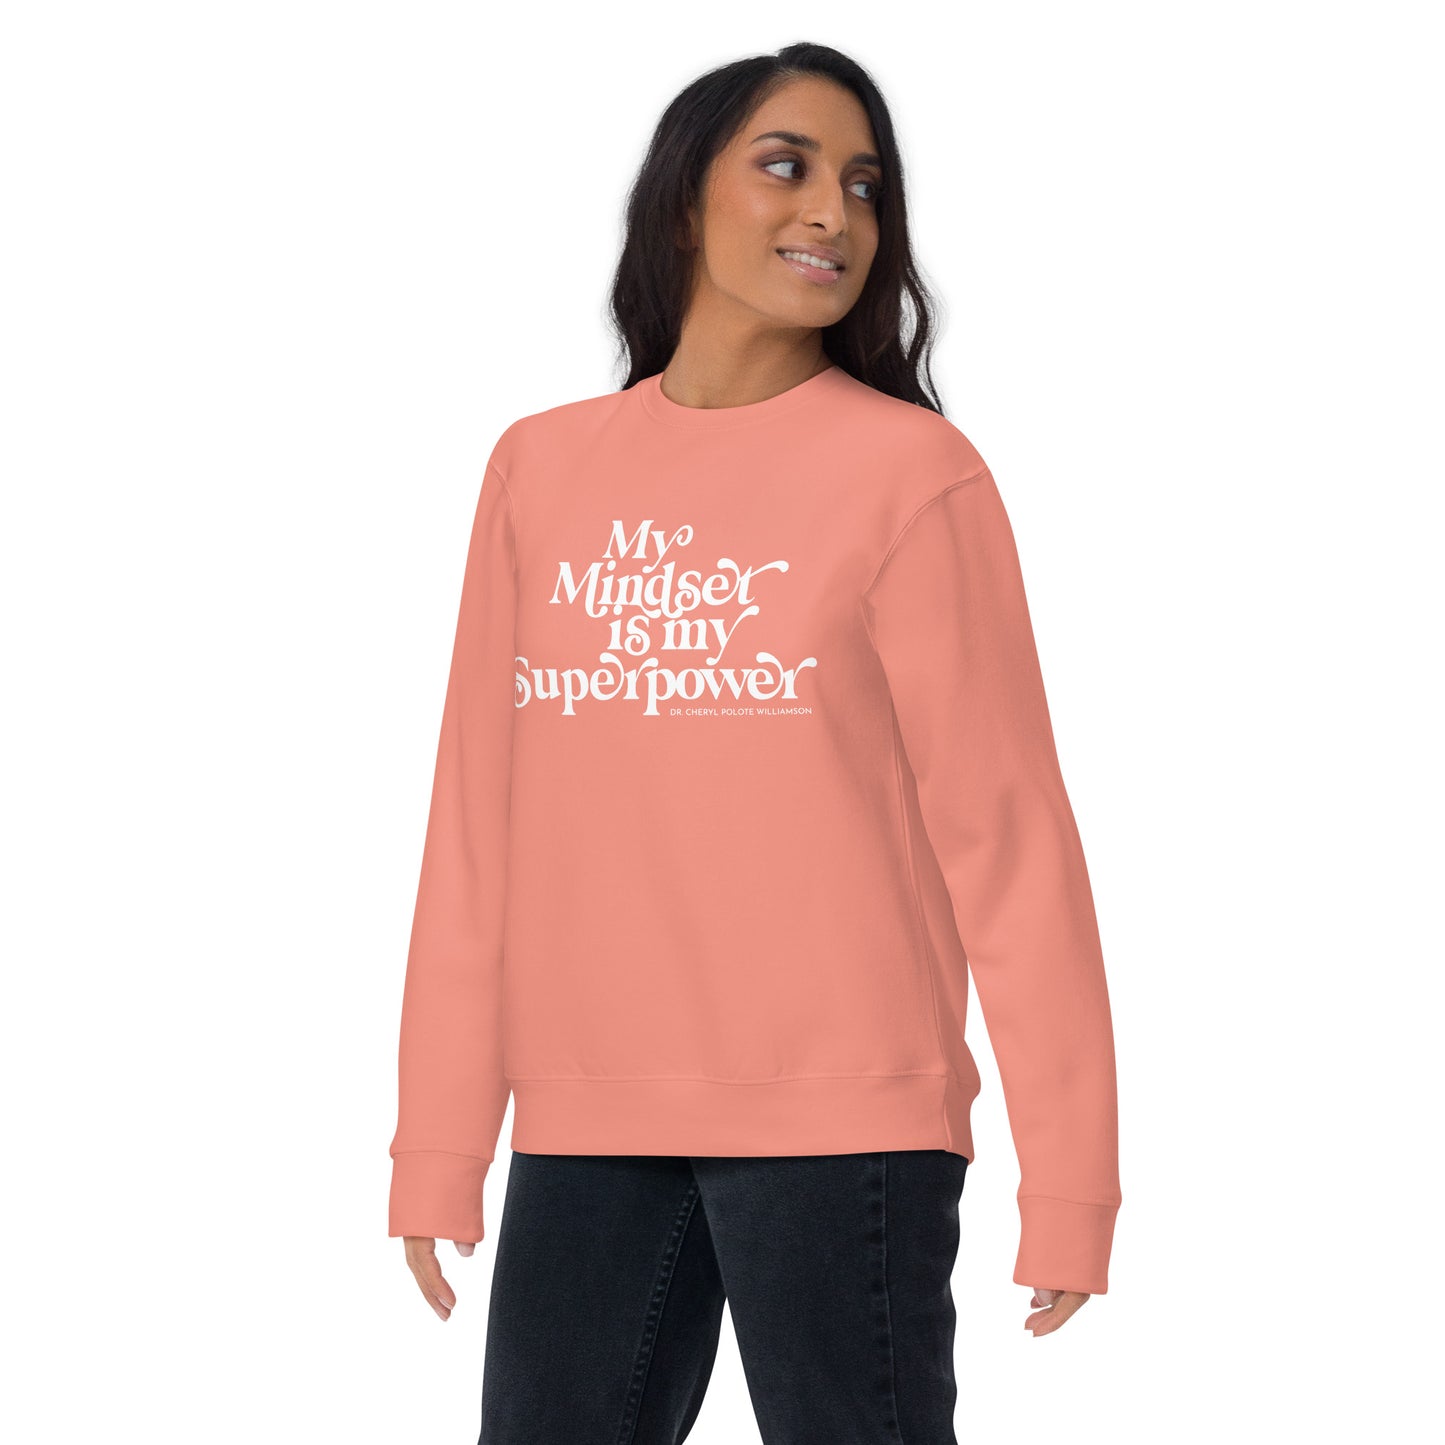 "My Mindset is My Superpower" Sweatshirt